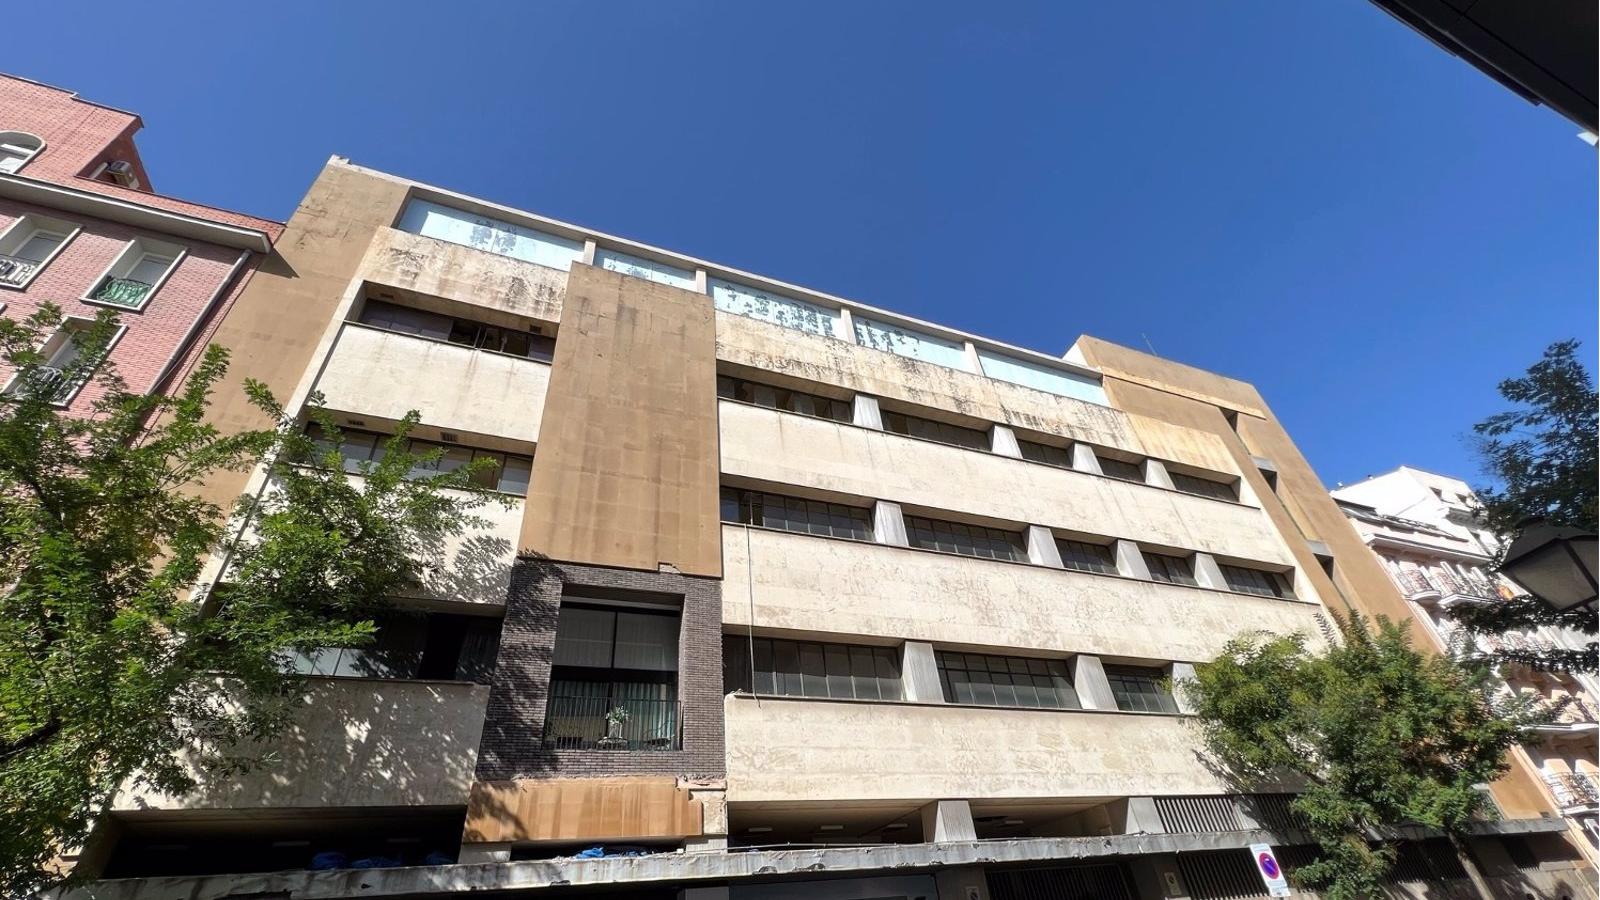 La socimi All Iron compra un edificio en el barrio Salamanca de Madrid por 33 millones para hacer apartamentos